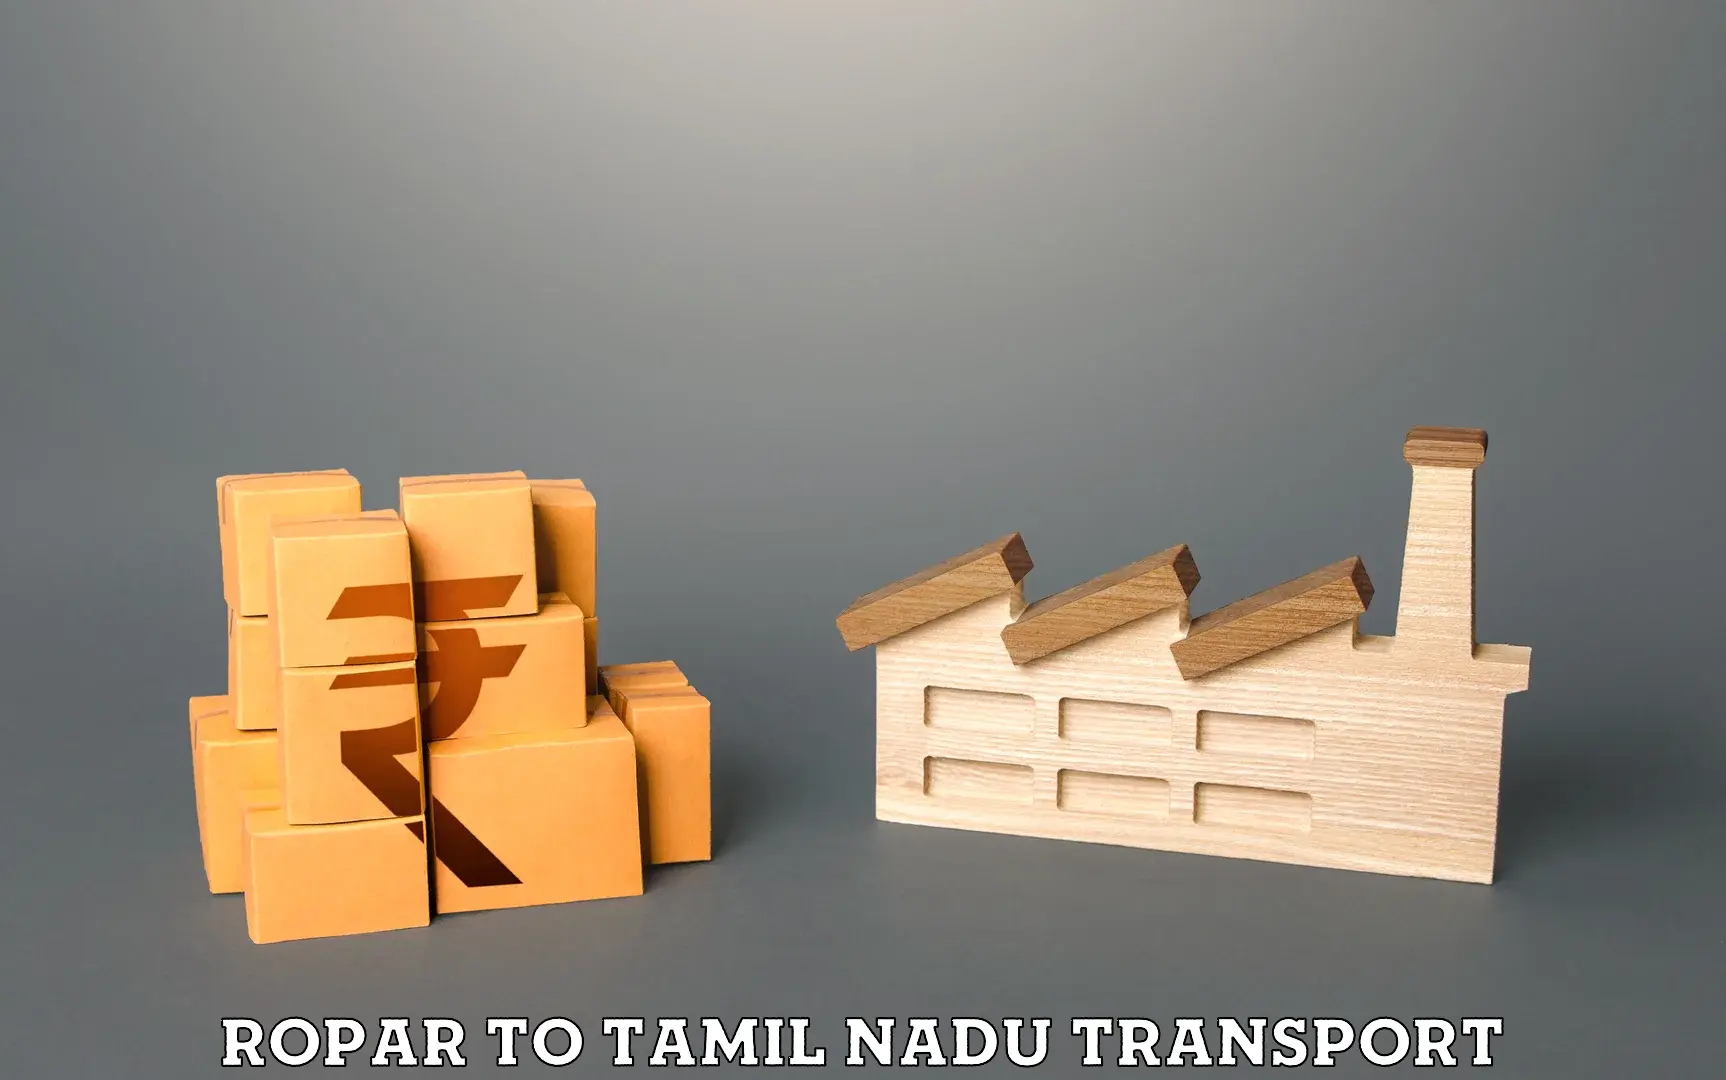 Pick up transport service Ropar to Tamil Nadu